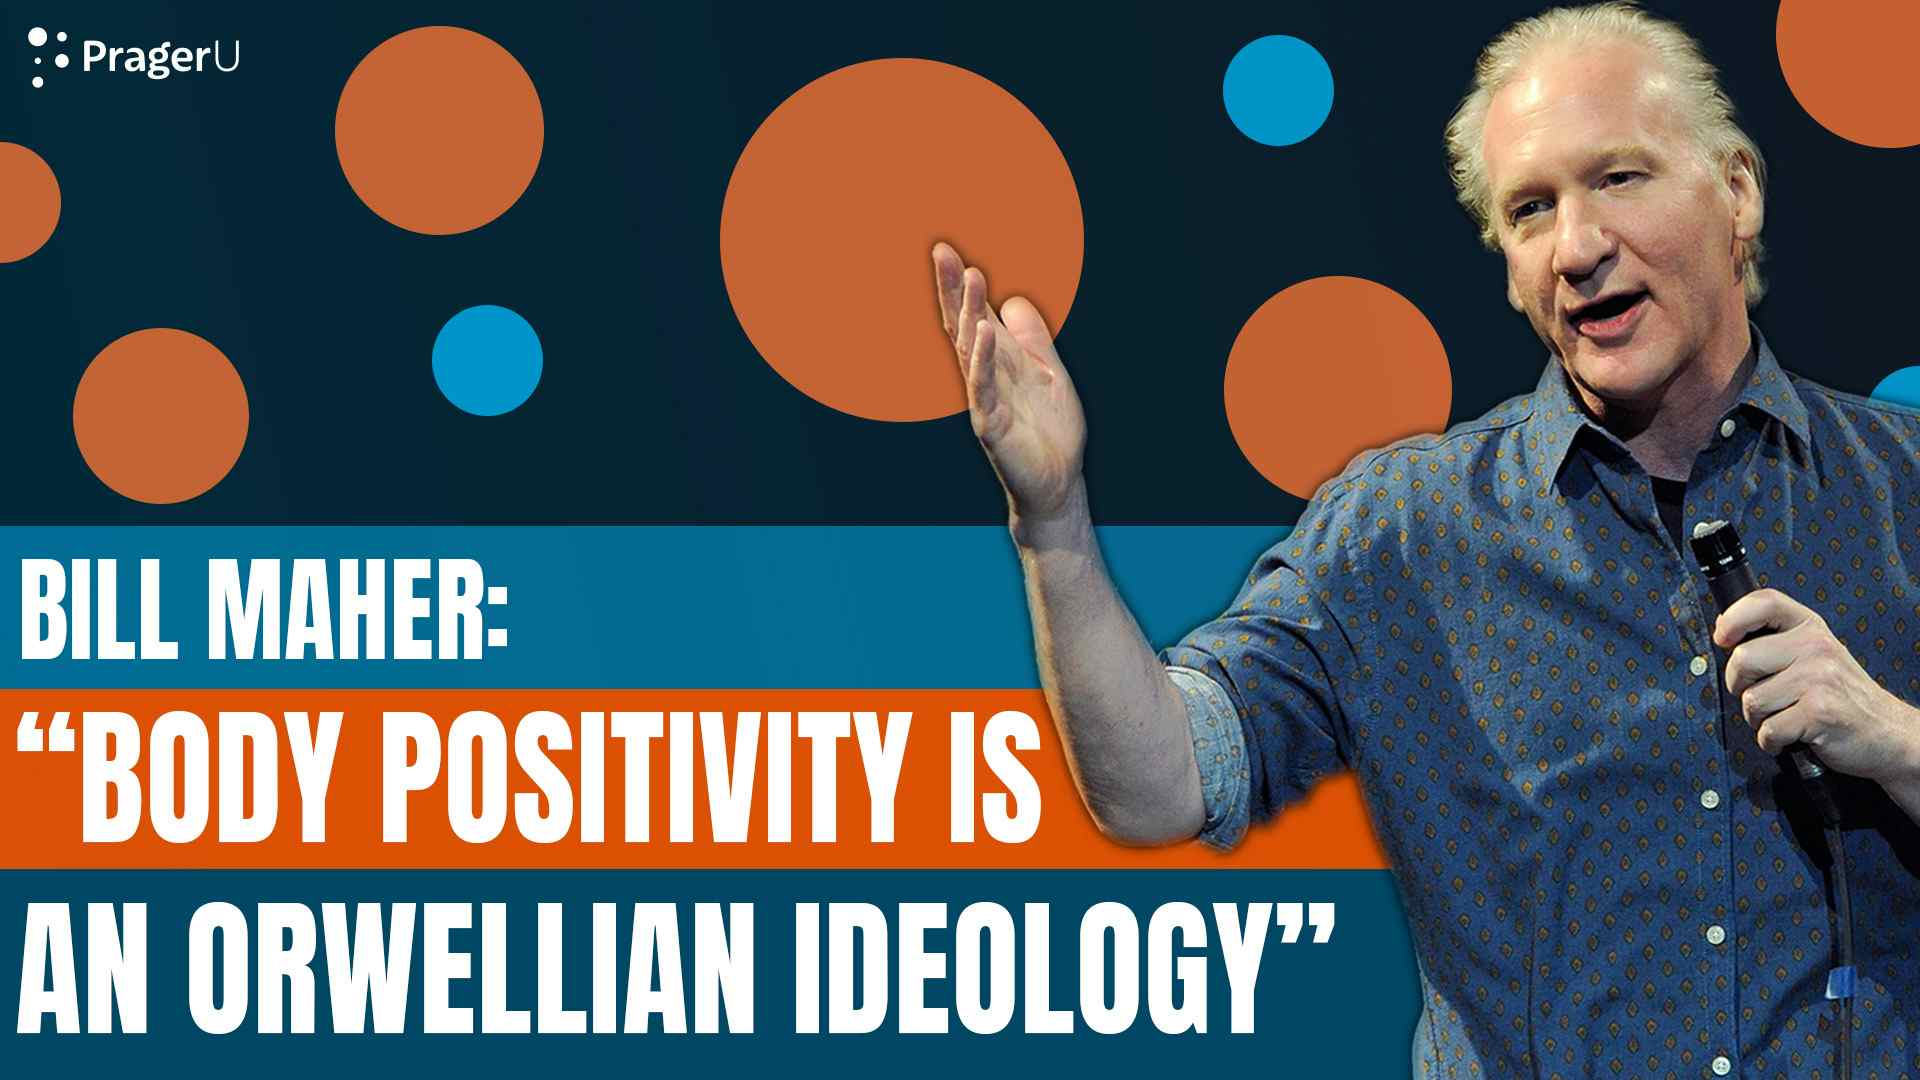 Bill Maher: Body Positivity is an Orwellian Ideology